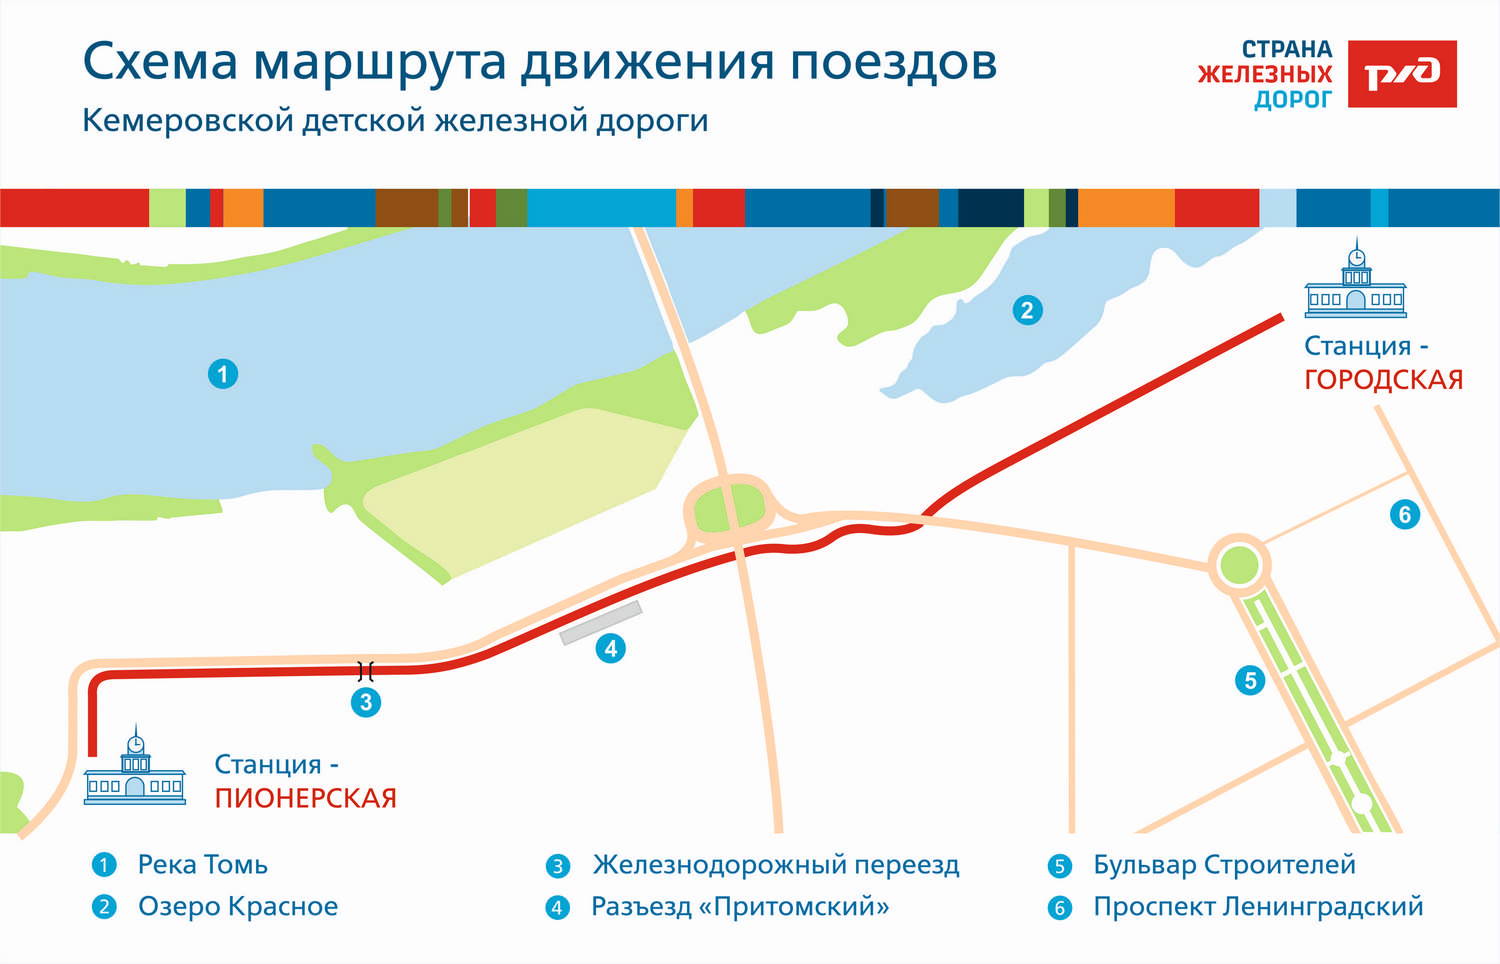 Схема движения поездов Кемеровской детской железной дороги